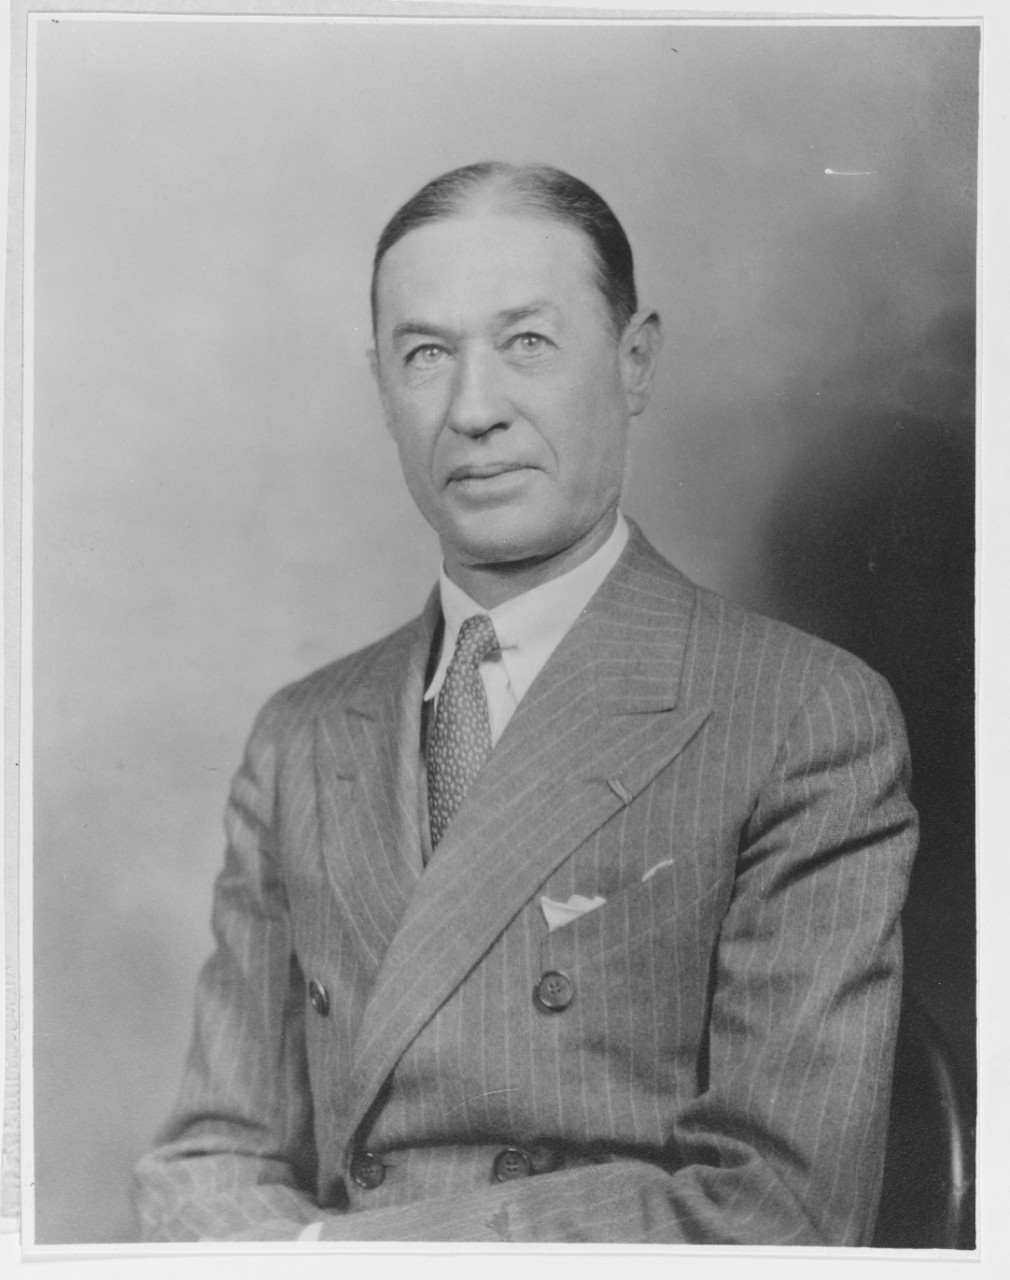 Woodson W. B. Capt USN